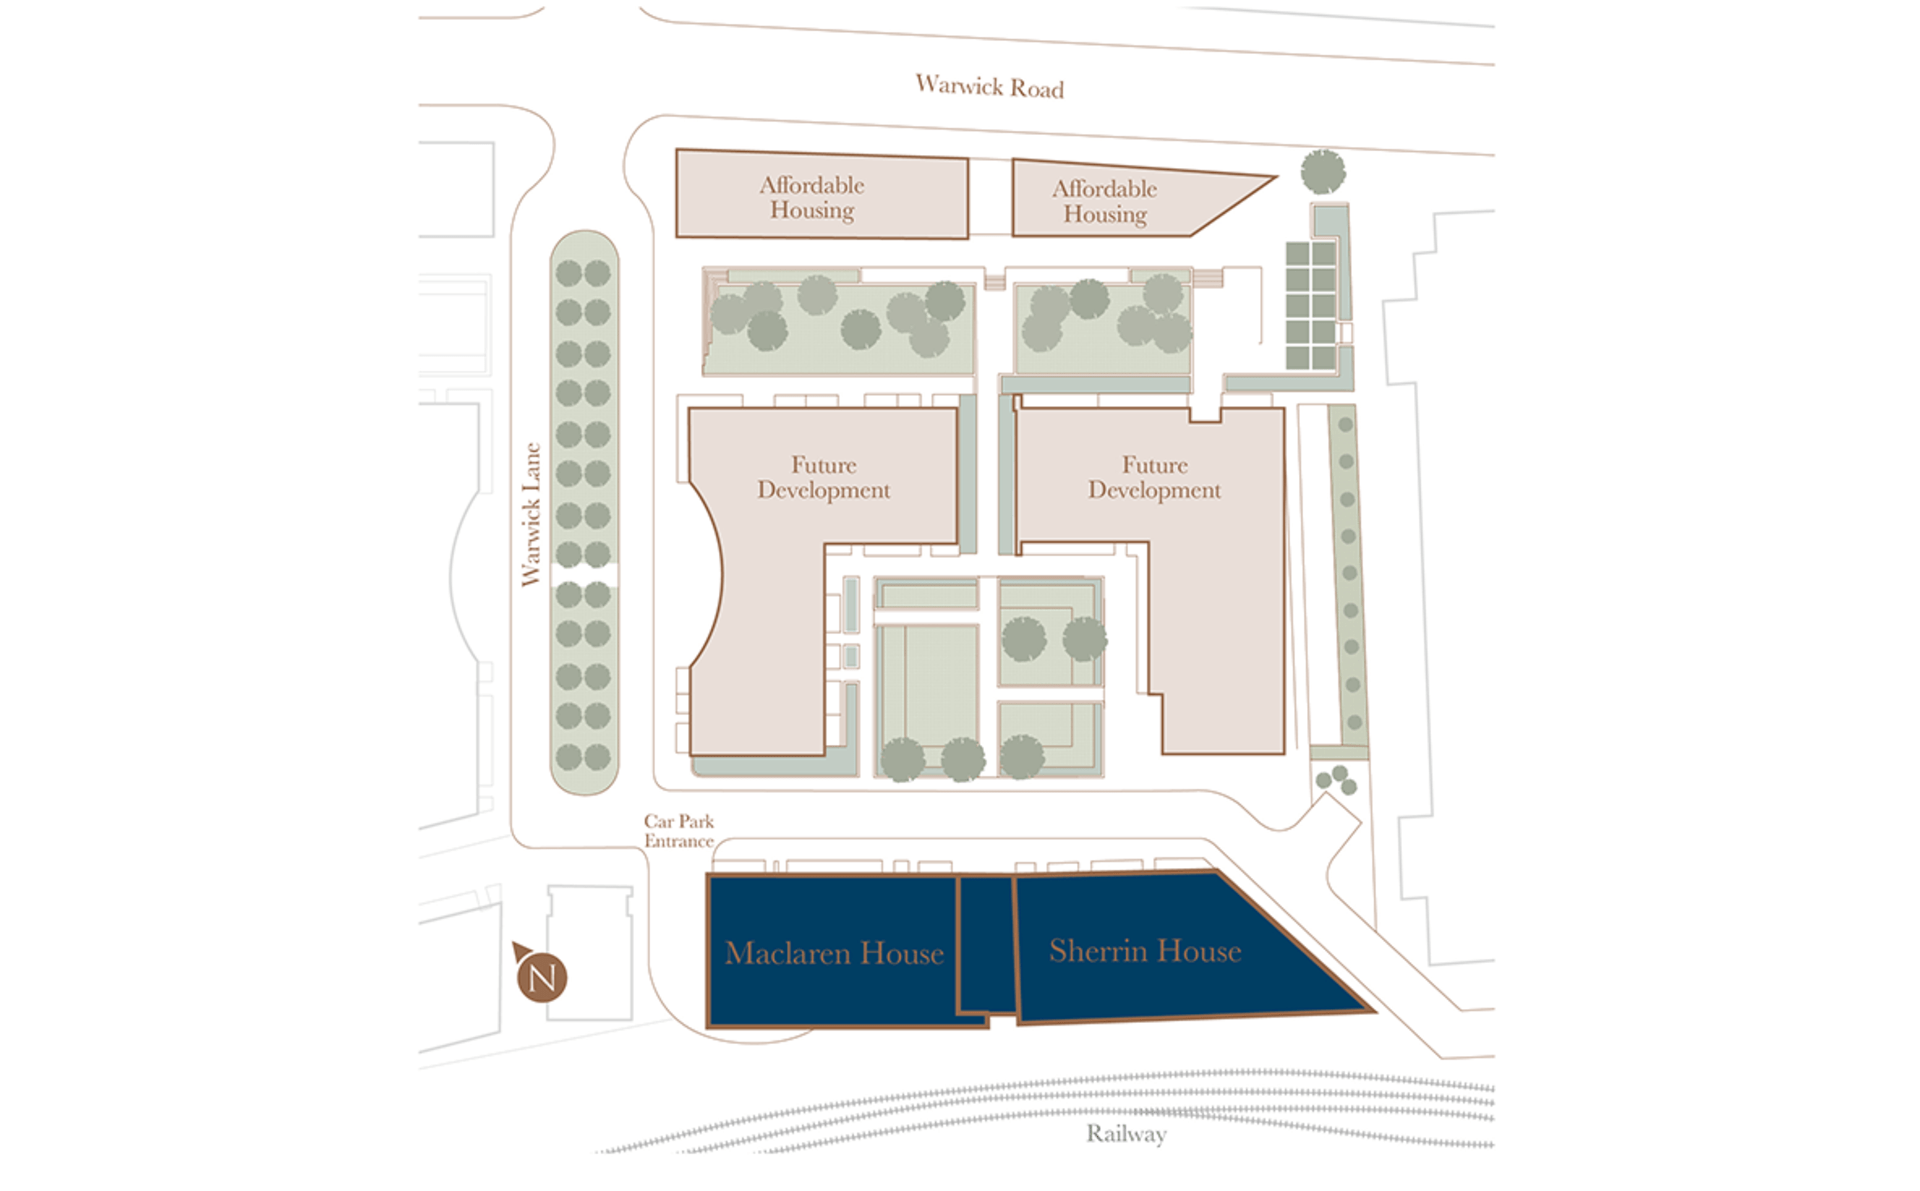 St Edward, Royal Warwick Square, Site Plan